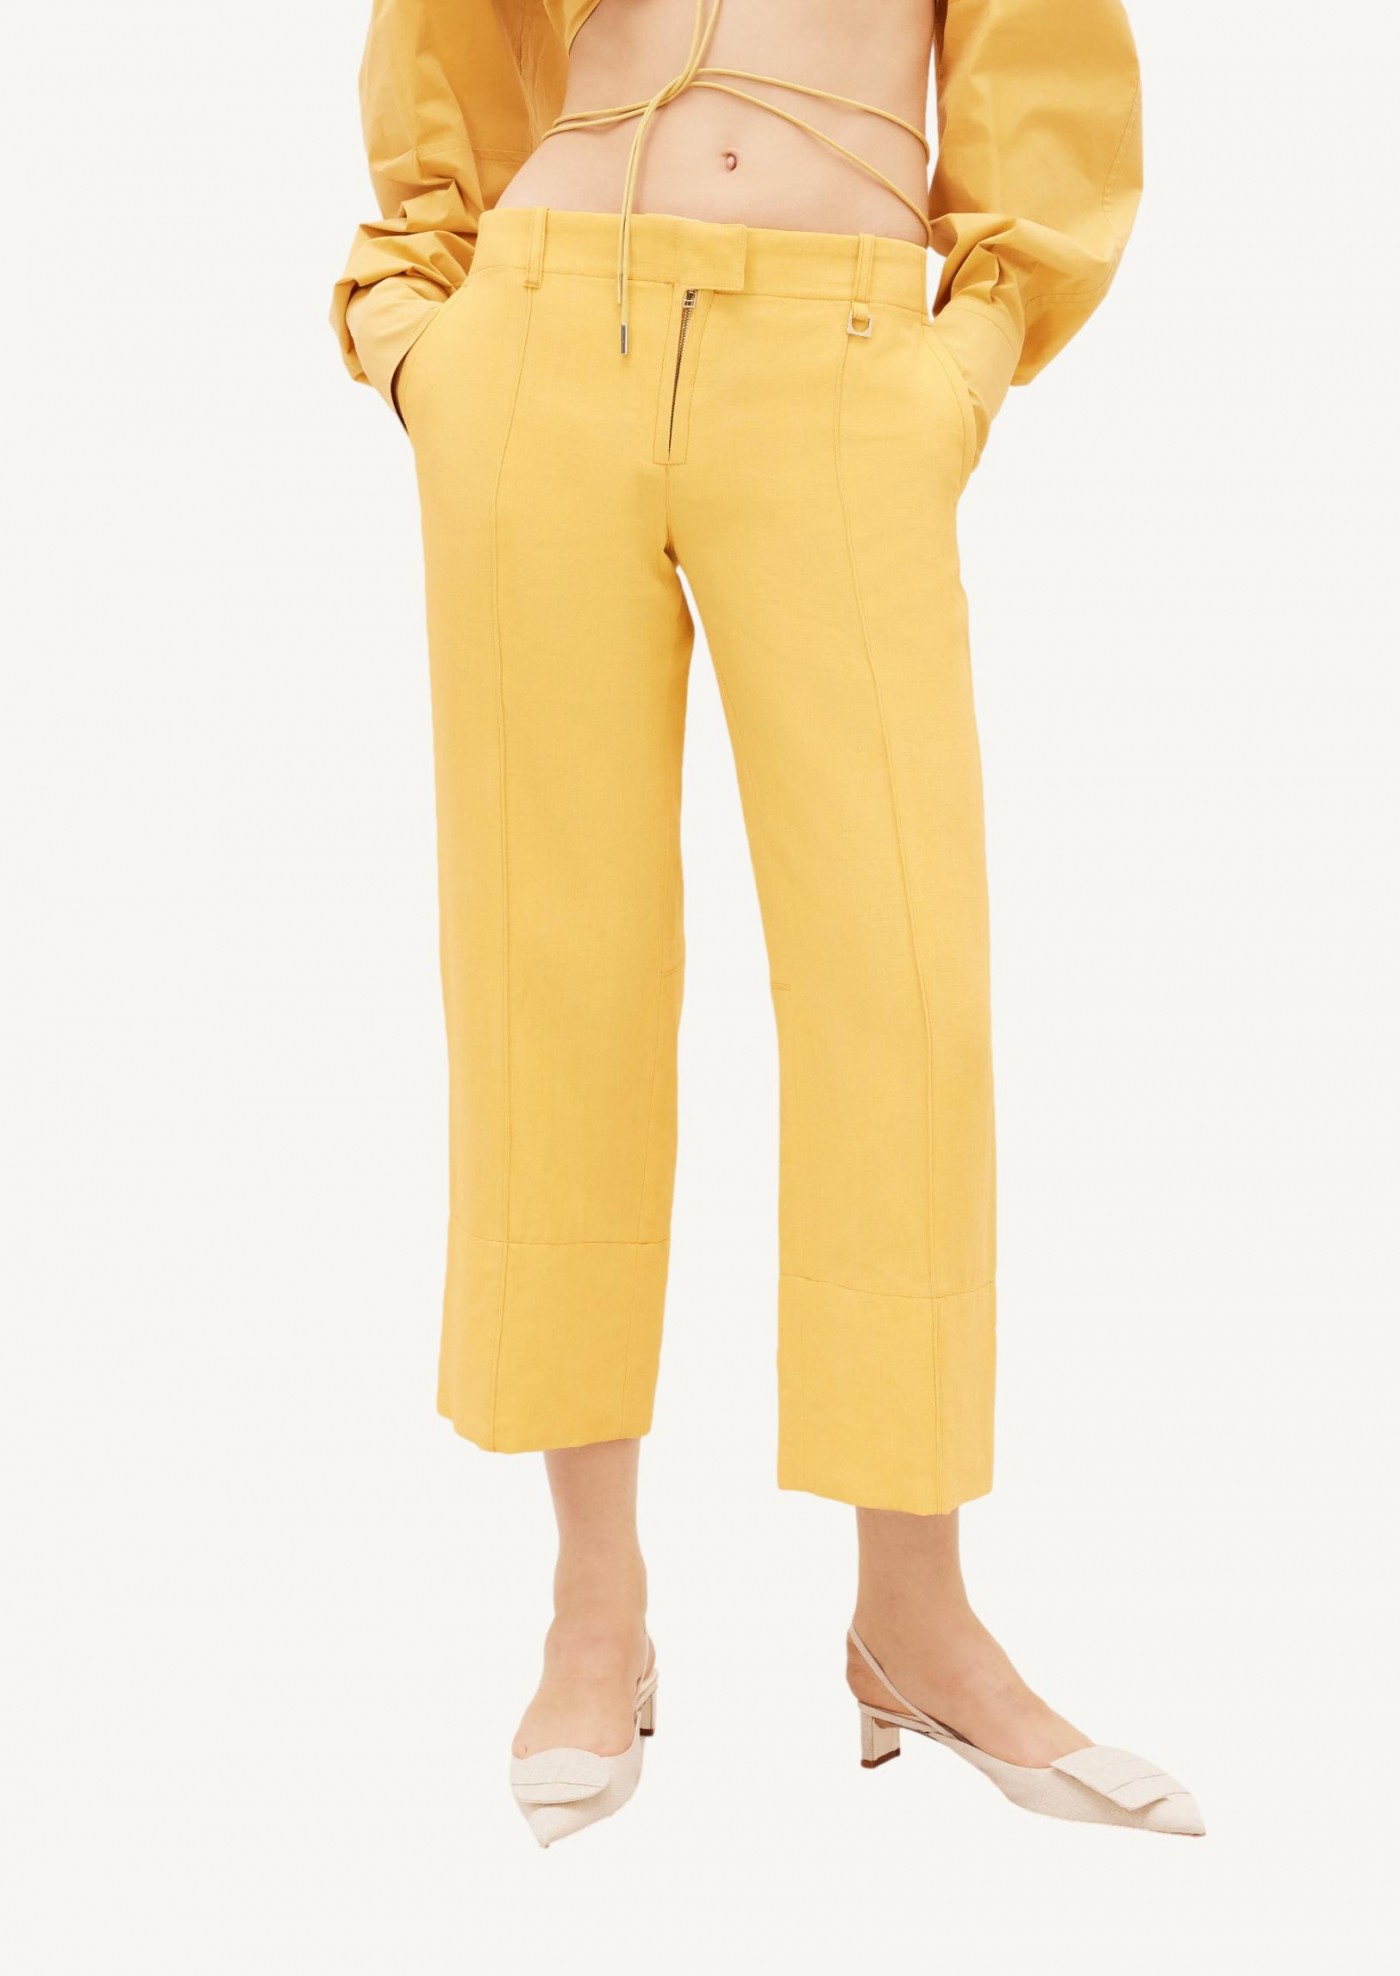 The yellow Areia pants